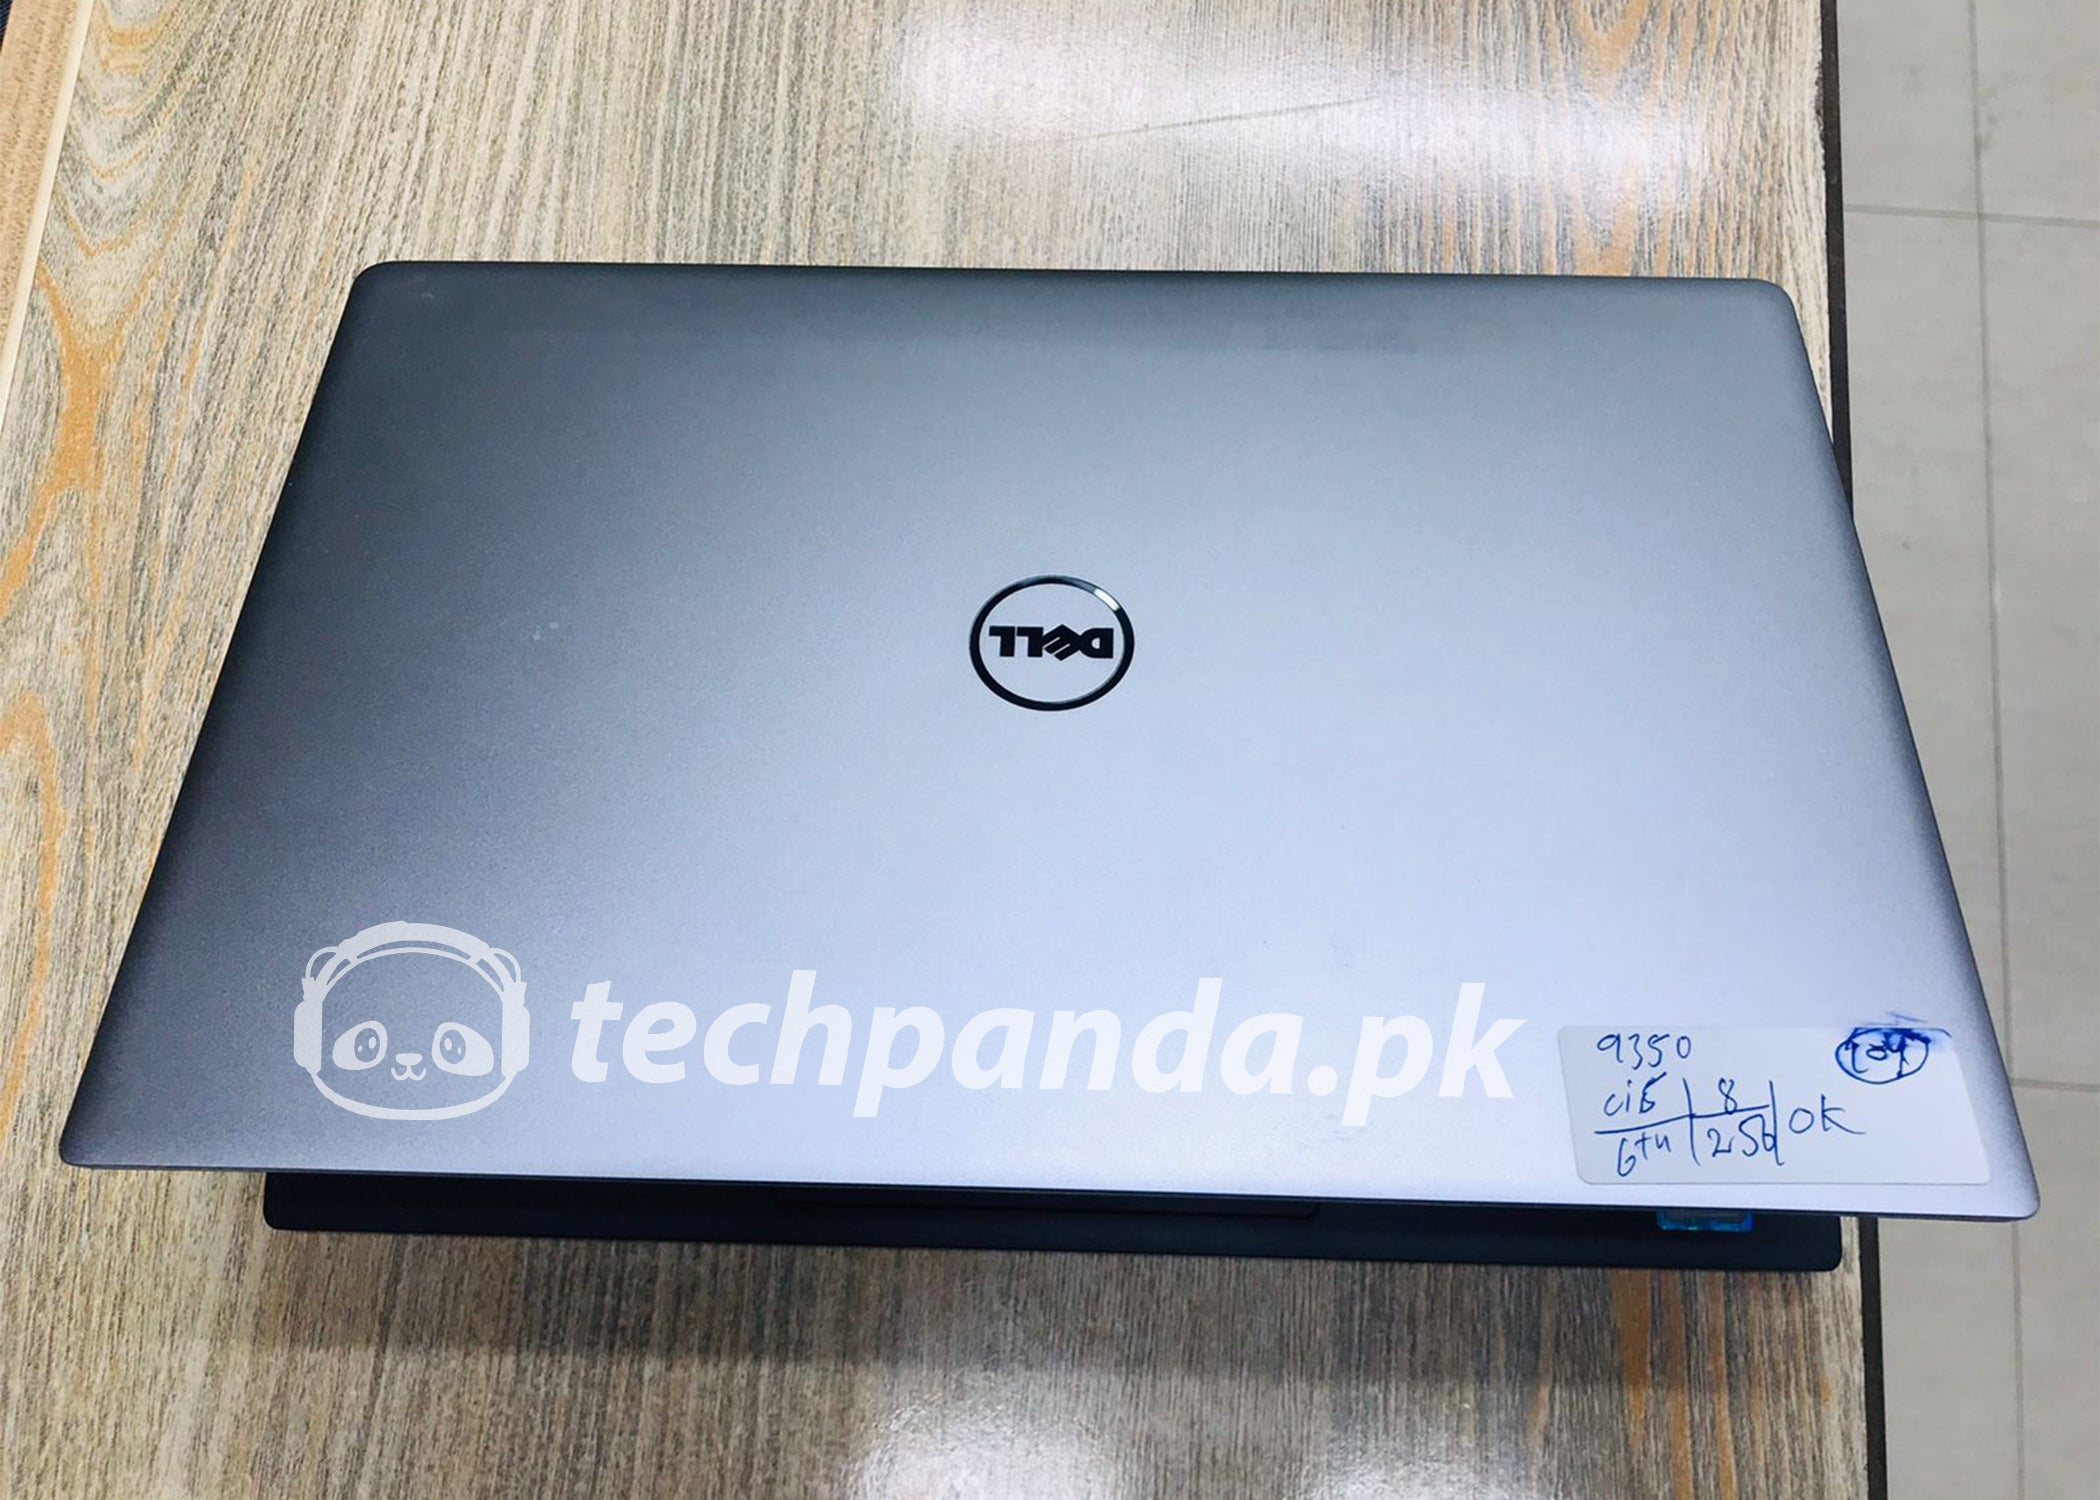 Dell XPS 9370 Laptop: Intel Core i5-8250U, 256GB SSD, 8GB RAM, 13.3